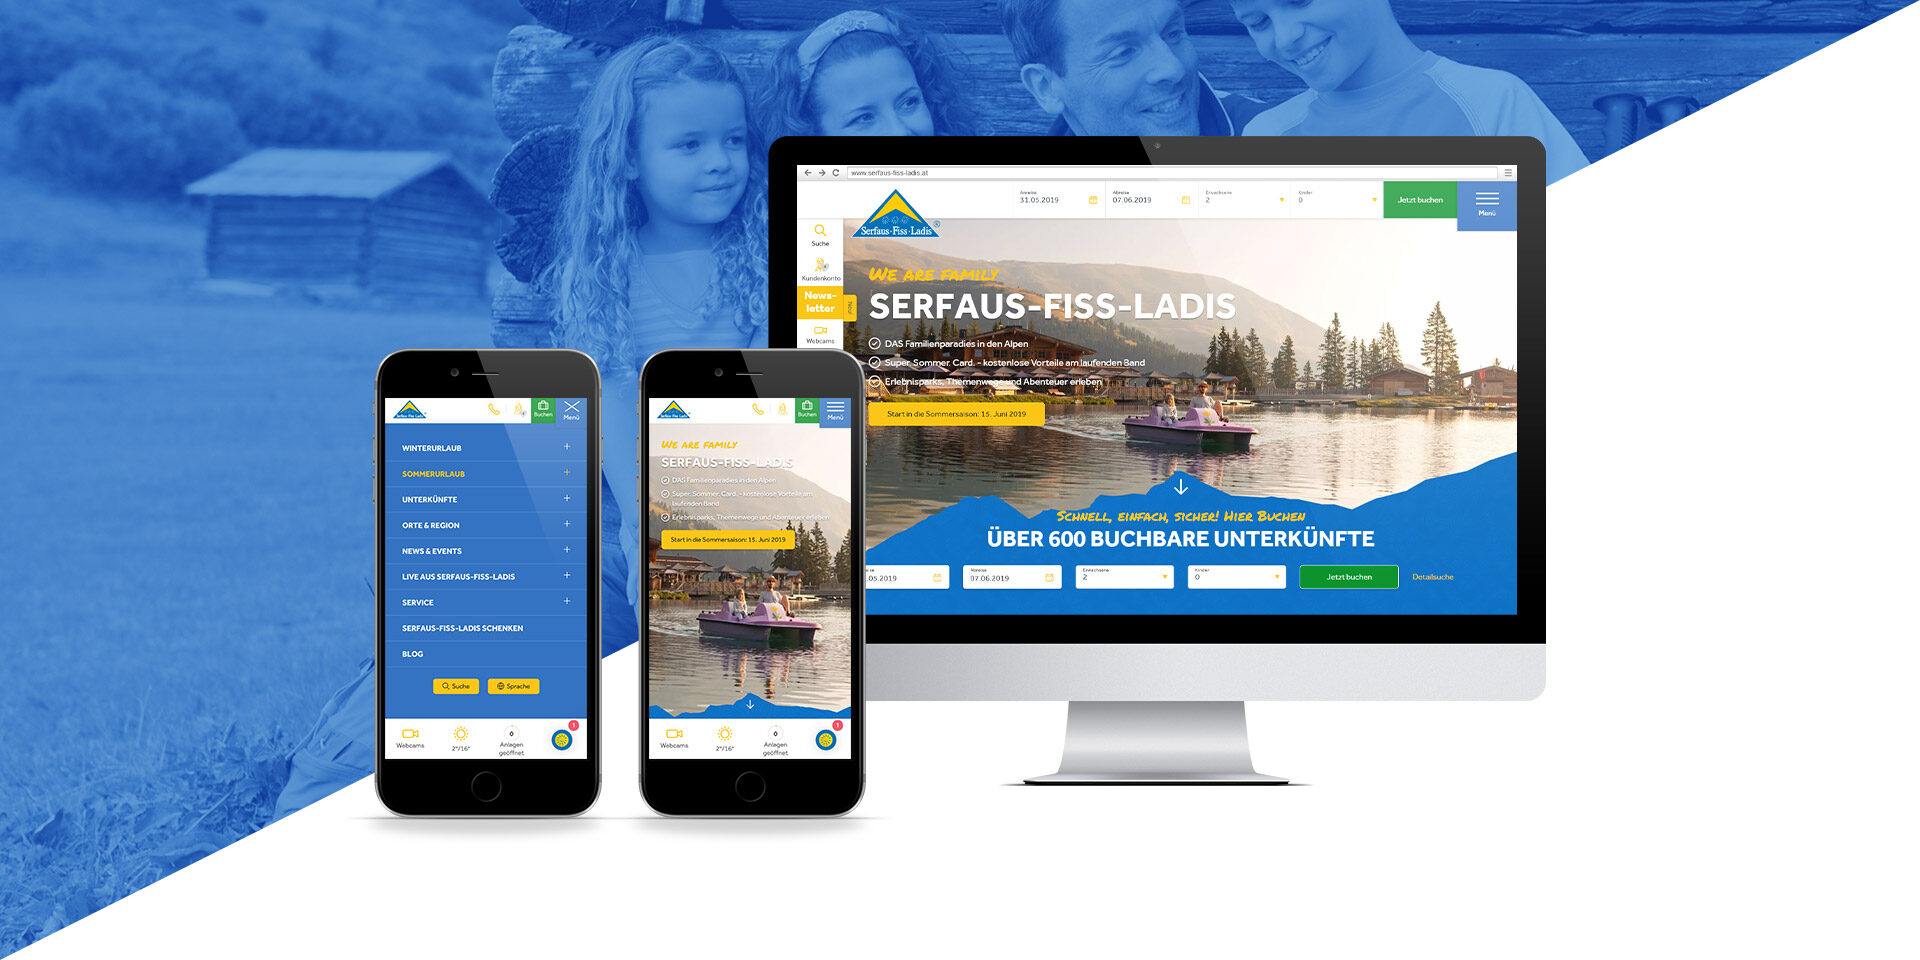 Auf einem Computer und zwei Smartphones ist eine Website von Serfaus-Fiss-Ladis zu sehen, auf der Bilder von einem See, Booten und einer Bergkulisse zu sehen sind. Im Hintergrund ist ein Familienfoto in Blautönen eingeblendet.